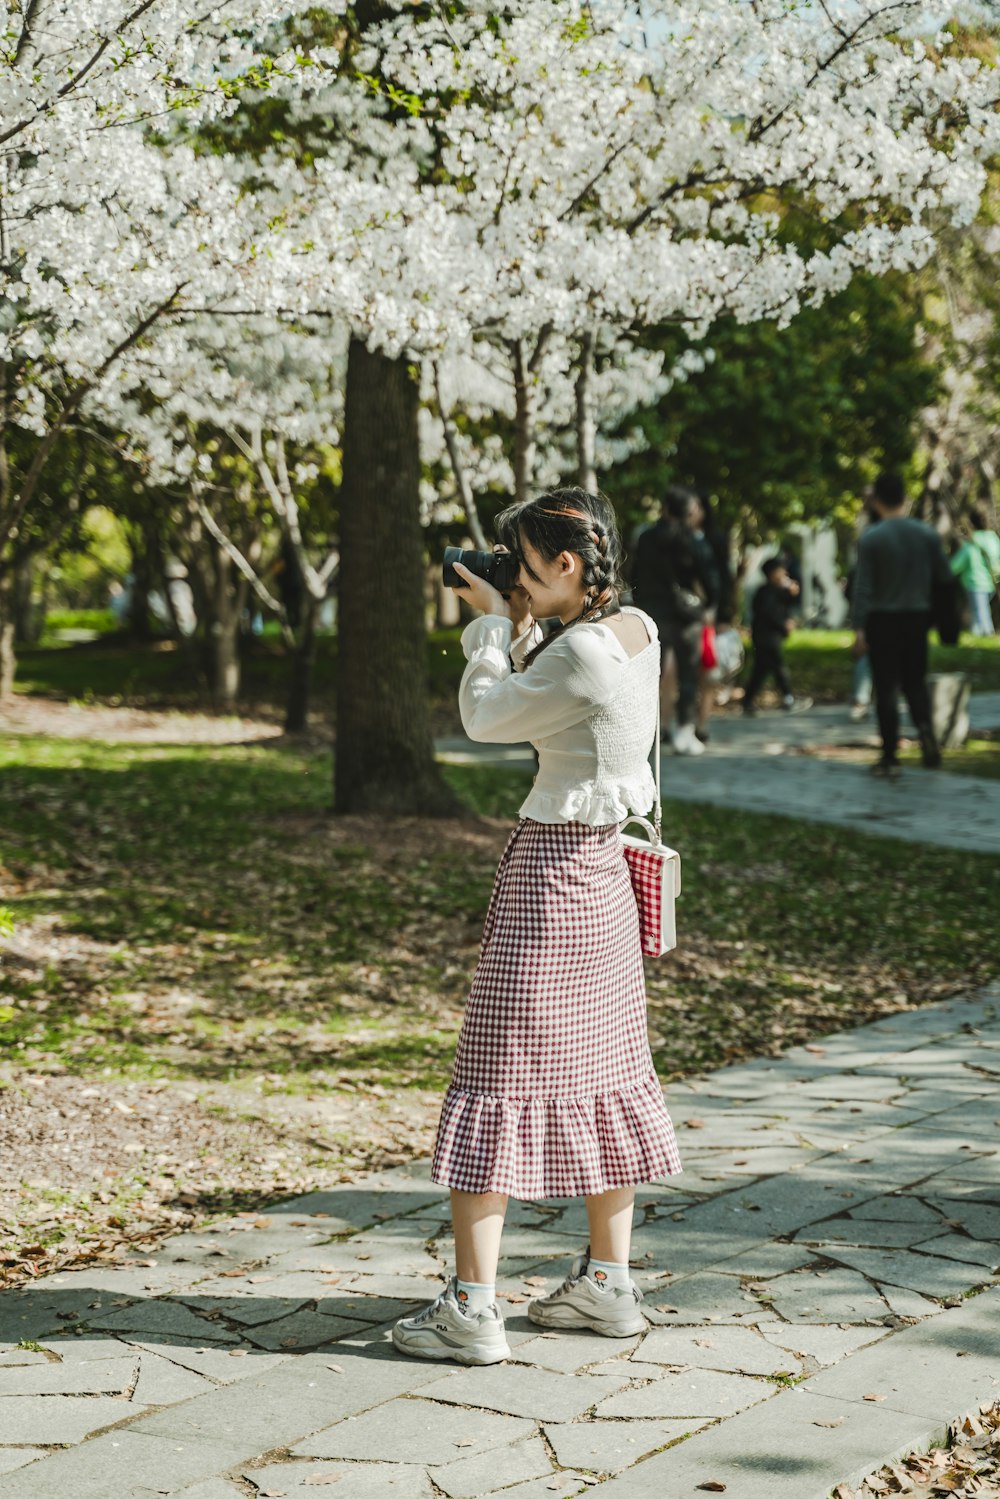 carga donante Talentoso Foto Mujer con camisa blanca de manga larga y falda de lunares rosa y blanca  parada bajo blanco – Imagen China gratis en Unsplash